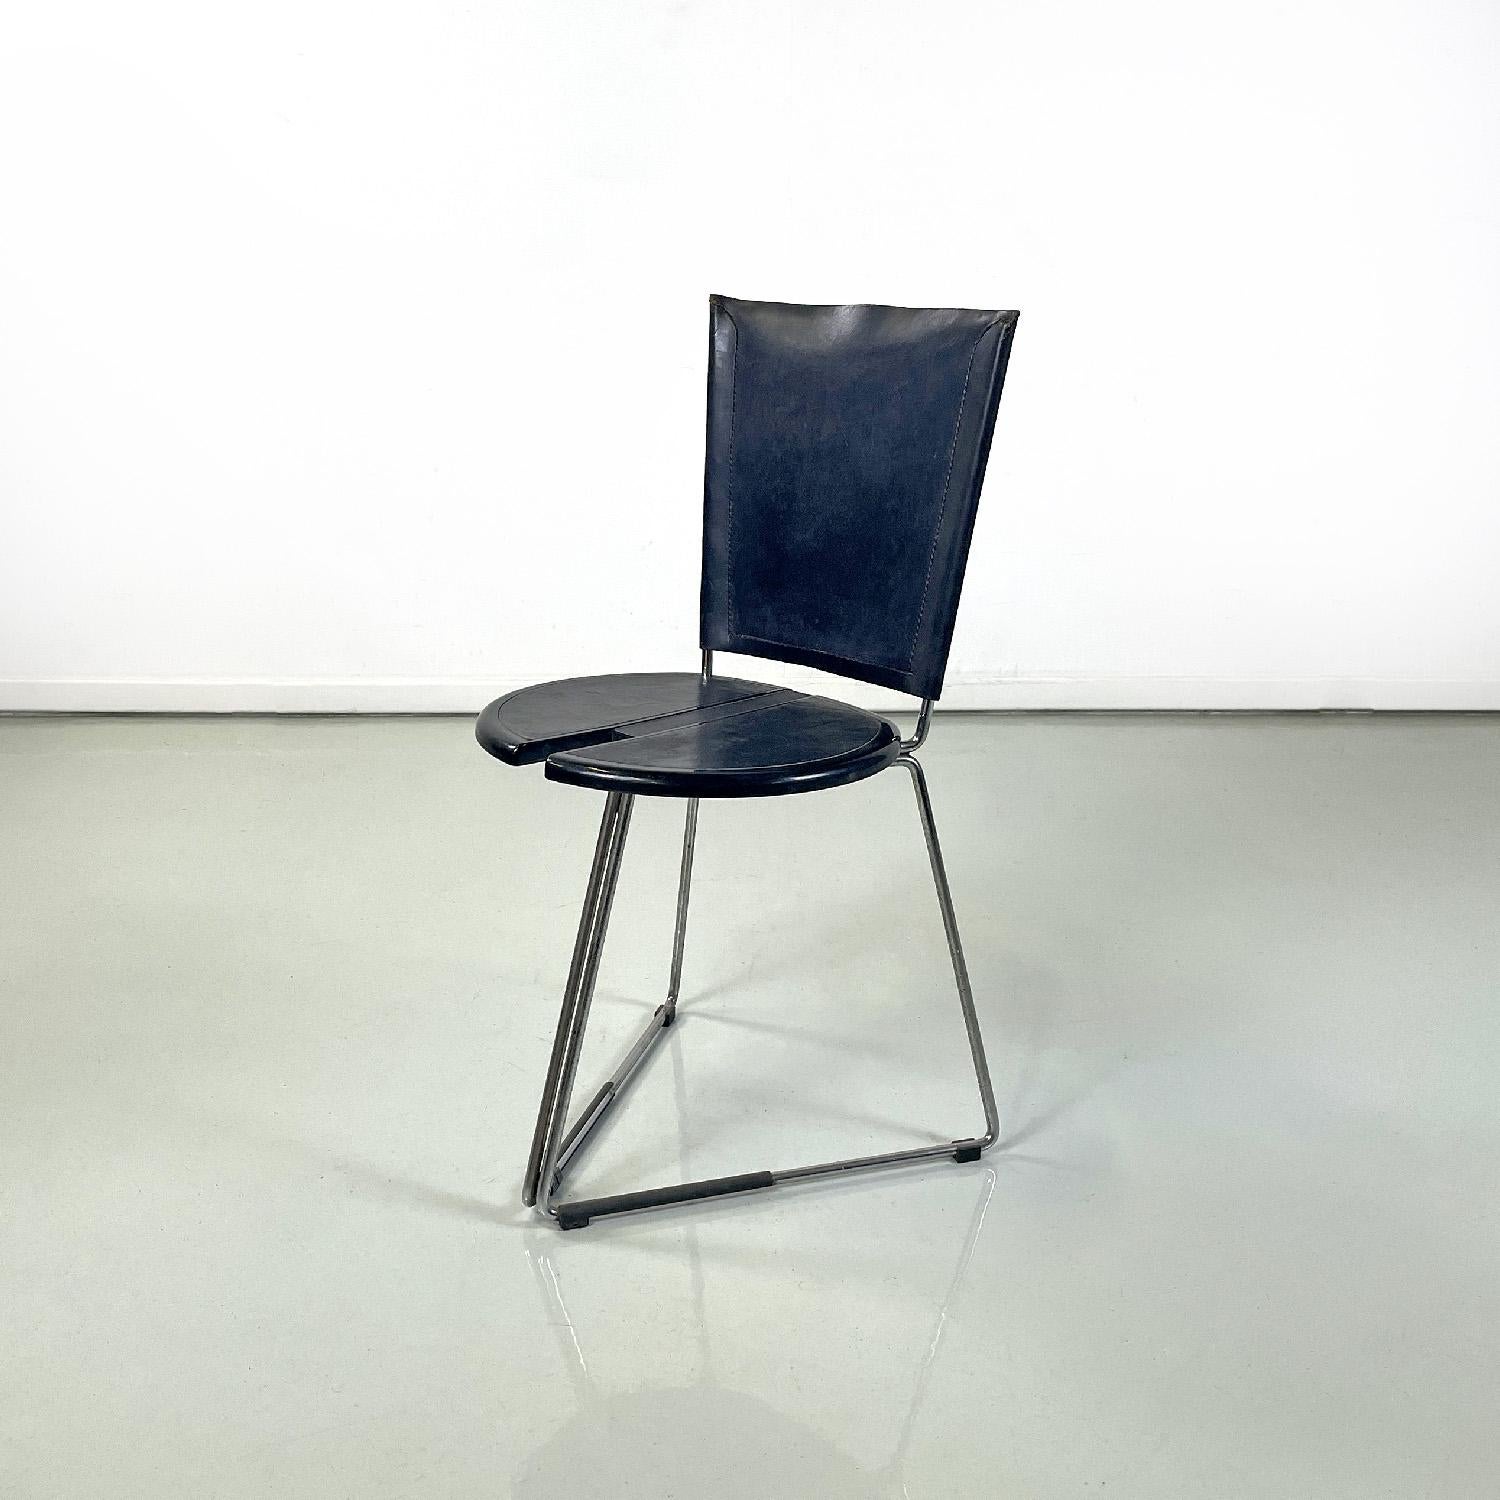 Italienischer moderner schwarzer Stuhl Terna von Gaspare Cairoli für Seccose, 1980er
Stuhl Mod. Terna mit dreieckigem Fuß. Der Sitz ist rund und besteht aus schwarzem Kunststoff mit zwei halbkreisförmigen Teilen, die mit schwarzem Leder bezogen sind